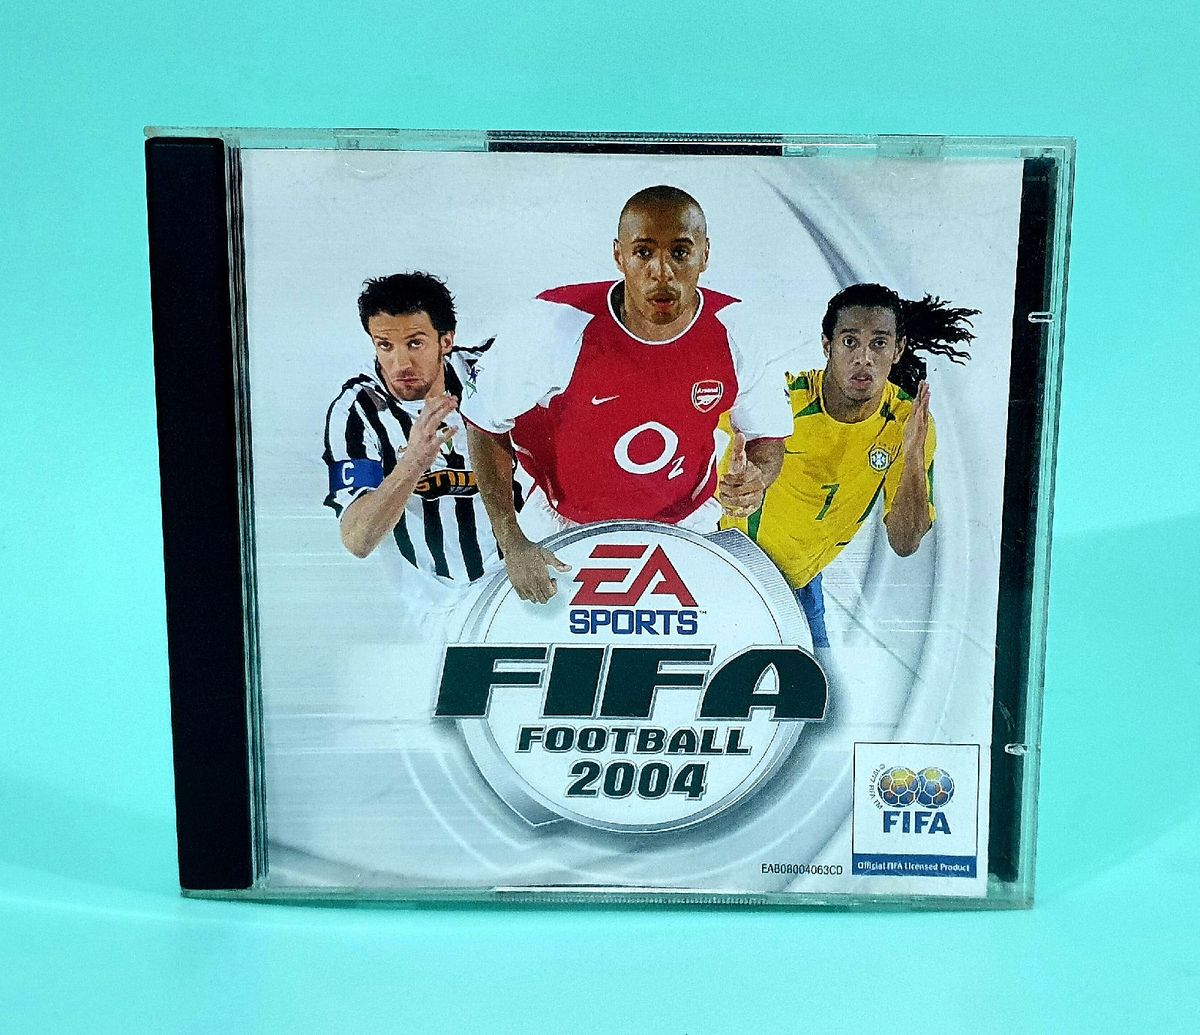 Jogos FIFA (2004-09) Alcobaça E Vestiaria • OLX Portugal